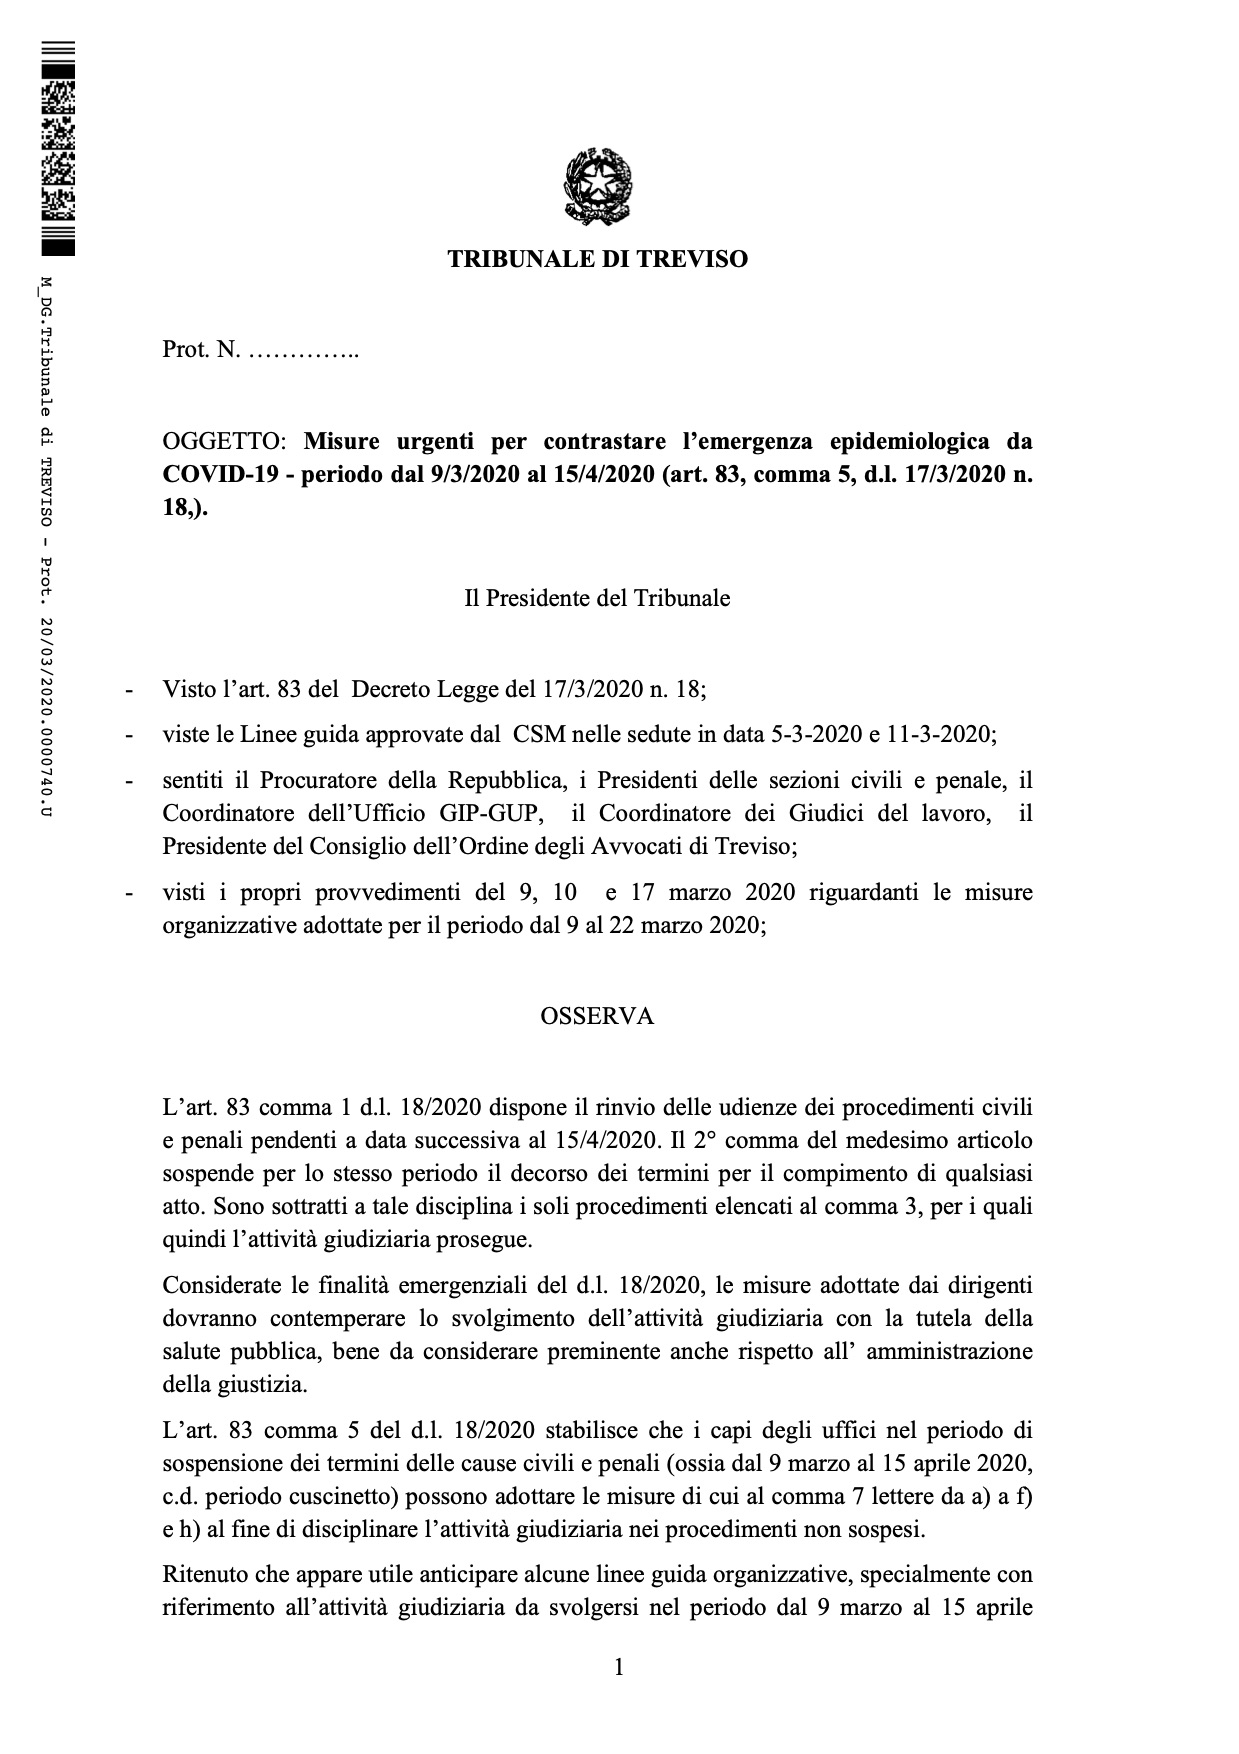 Provvedimento Presidente del Tribunale di Treviso - Prot 740-2020 Emergenza Covid-19 - 20.03.2020